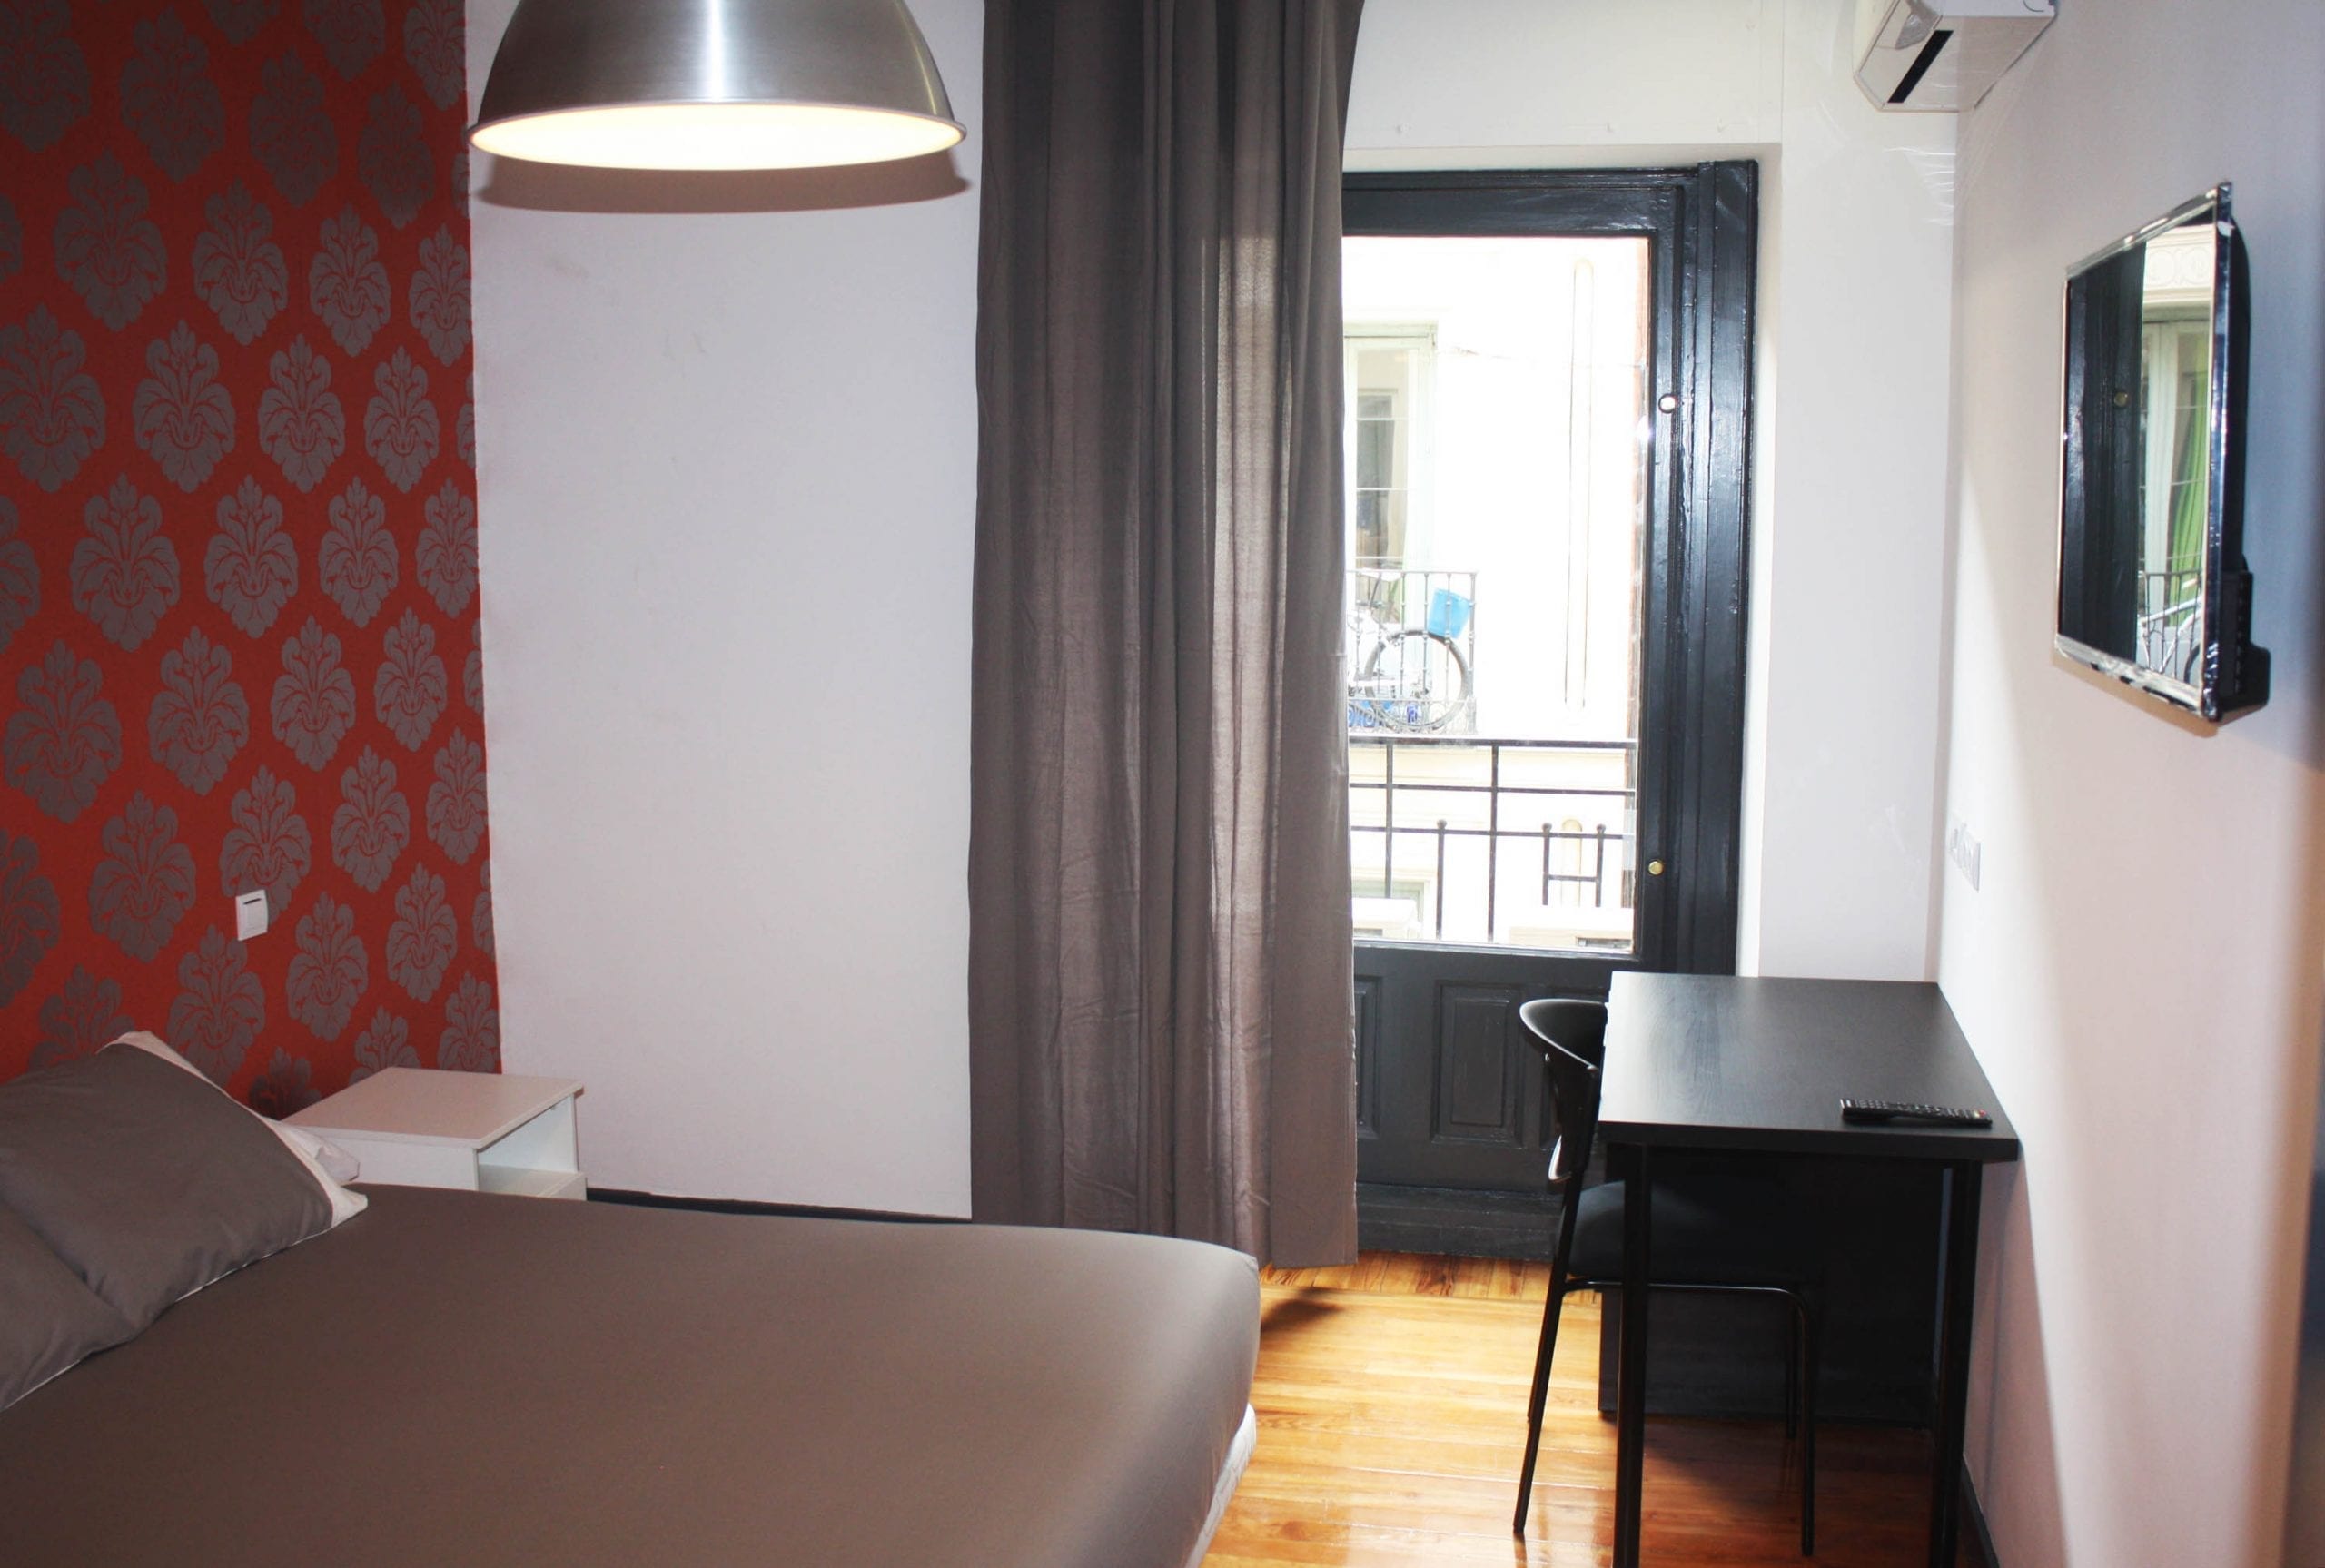 Room. 08 student apartment in gran via 15 vitium residencias